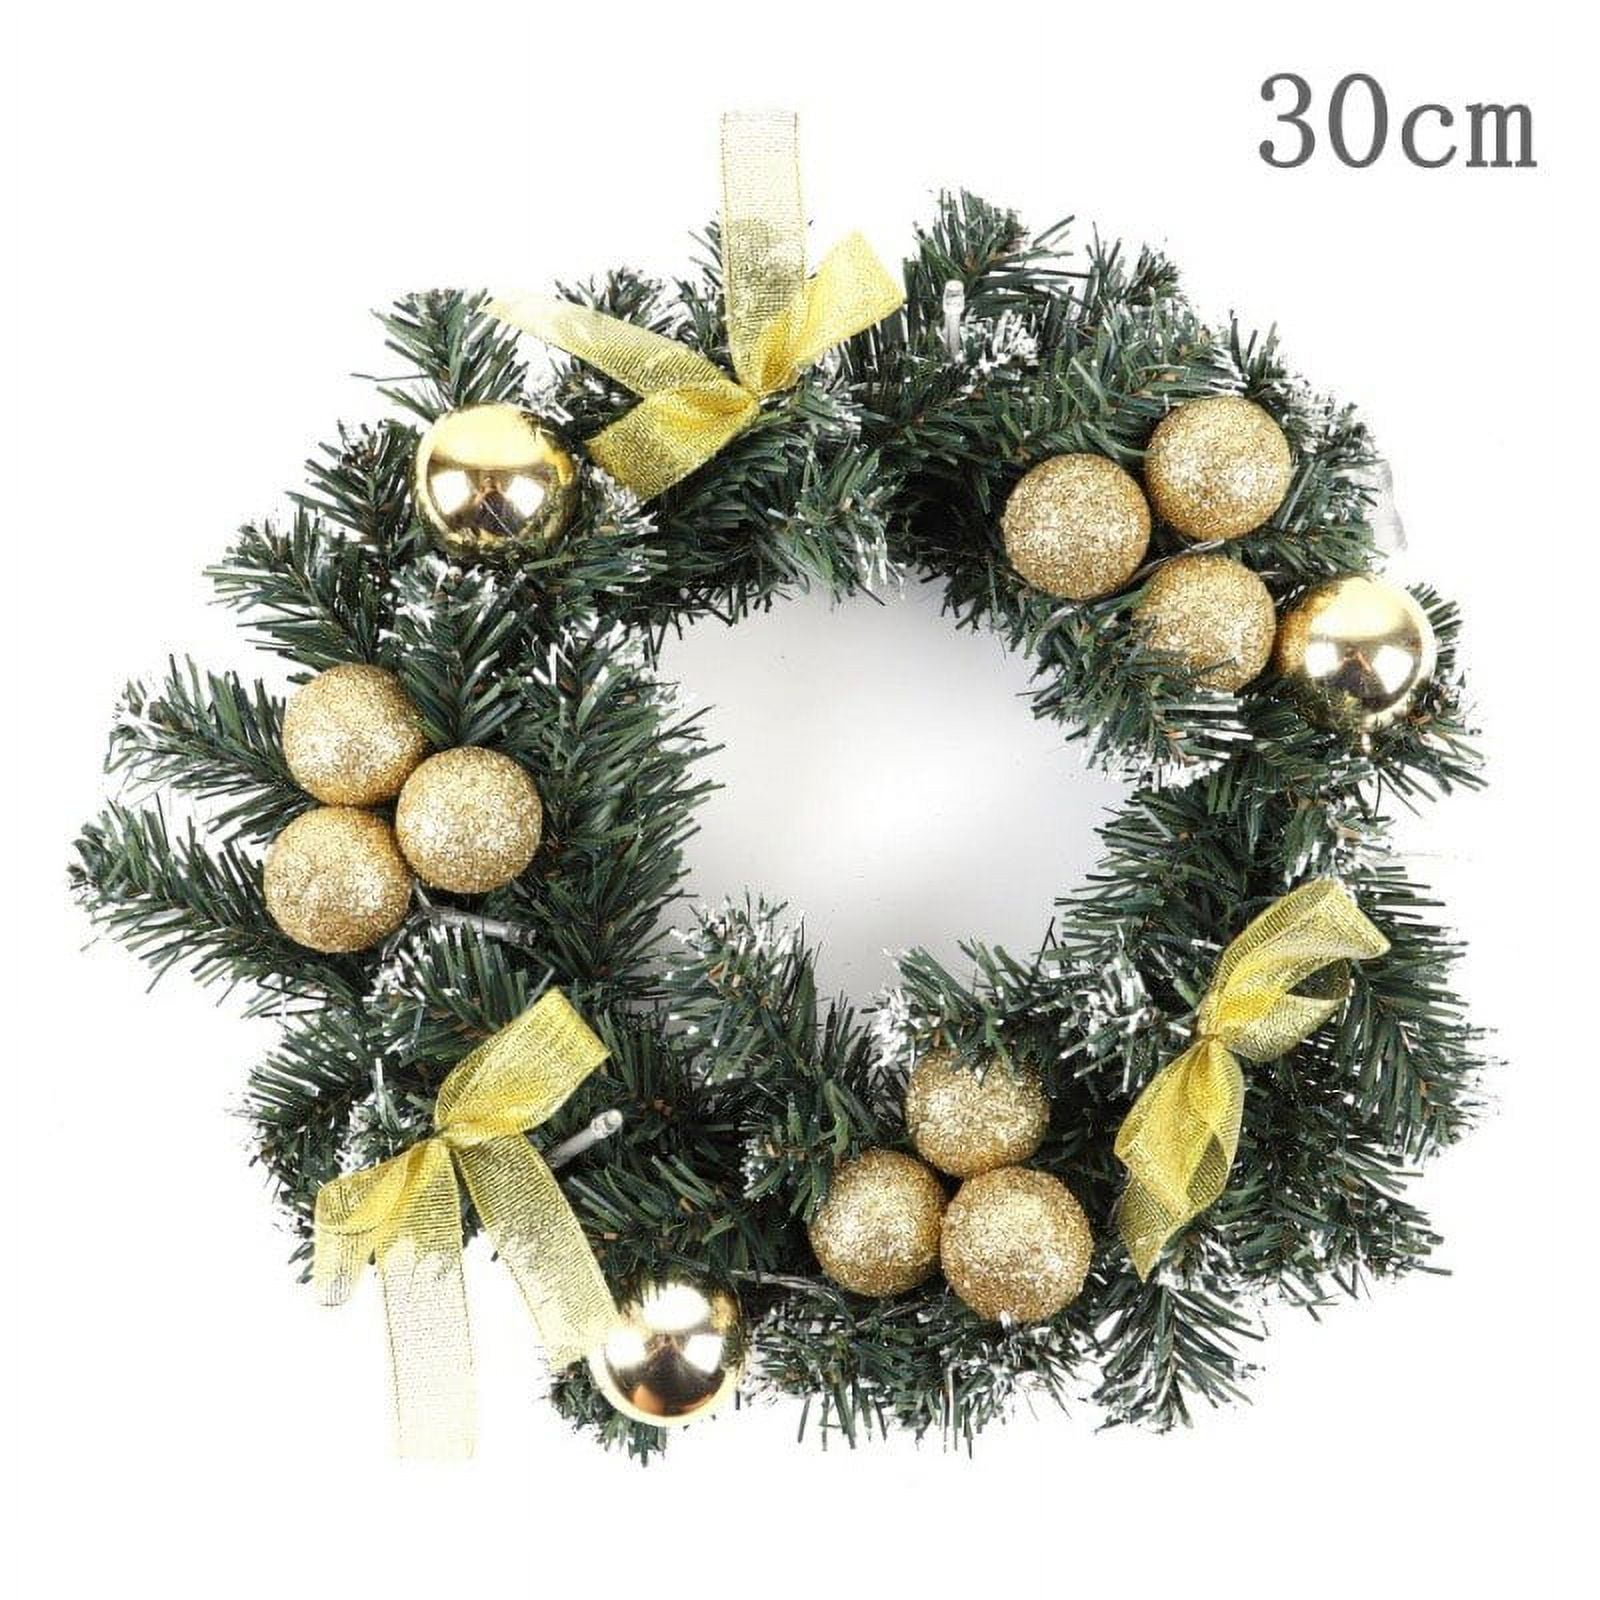  EXCEART 18 Pcs Artificial Fruit Christmas Wreath Decor